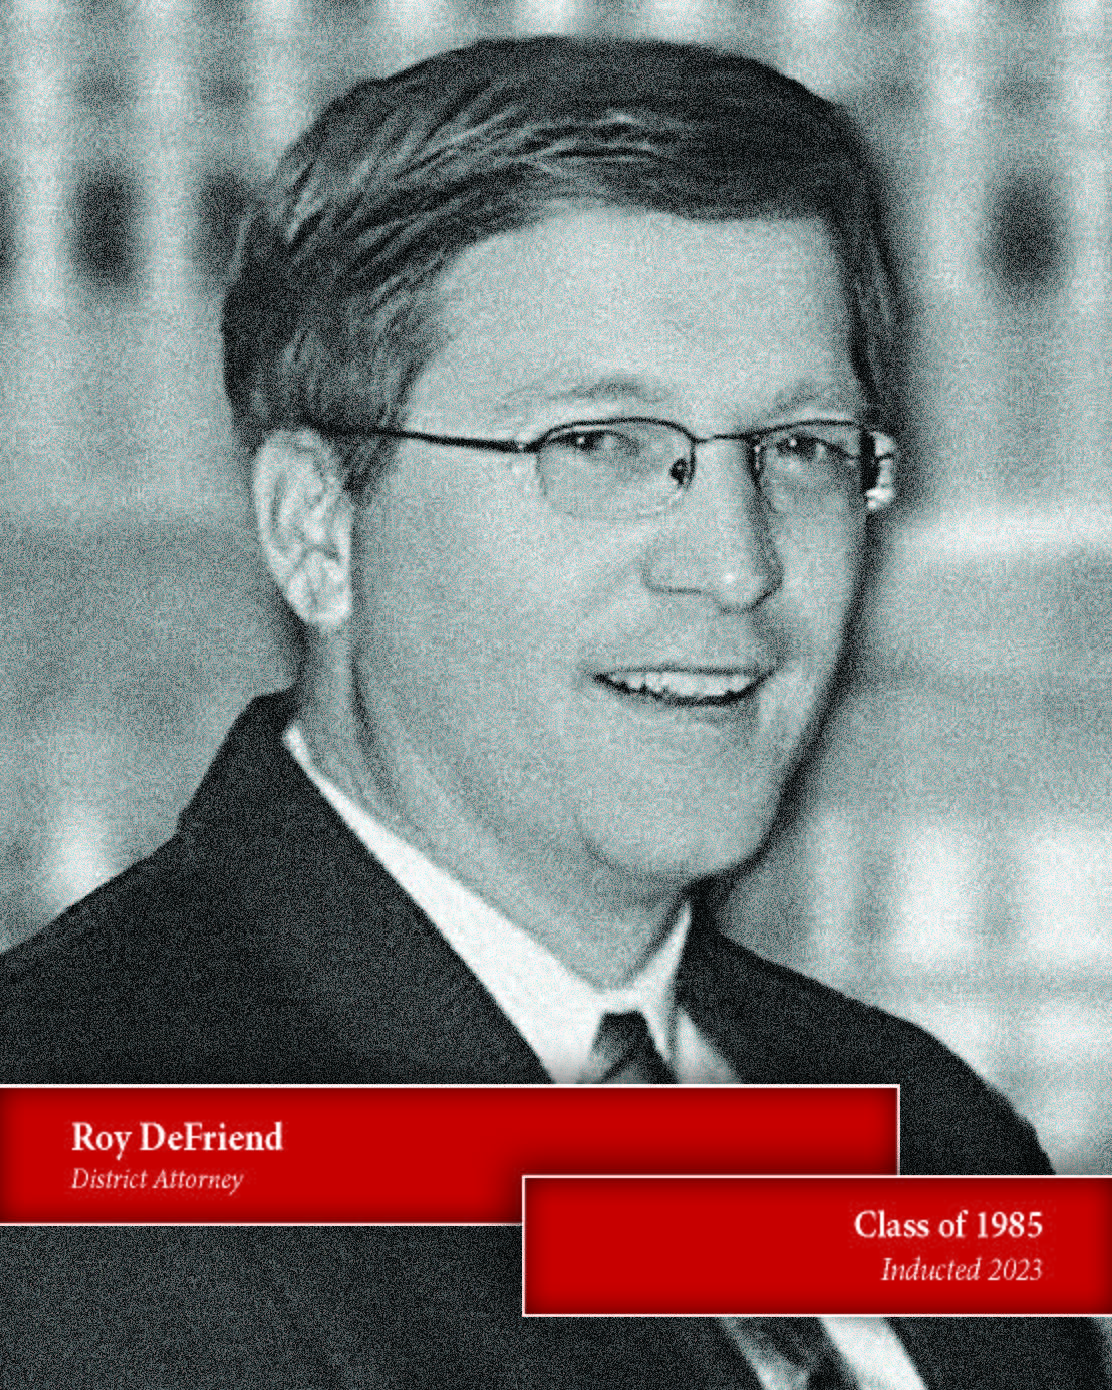 Roy DeFriend, '85